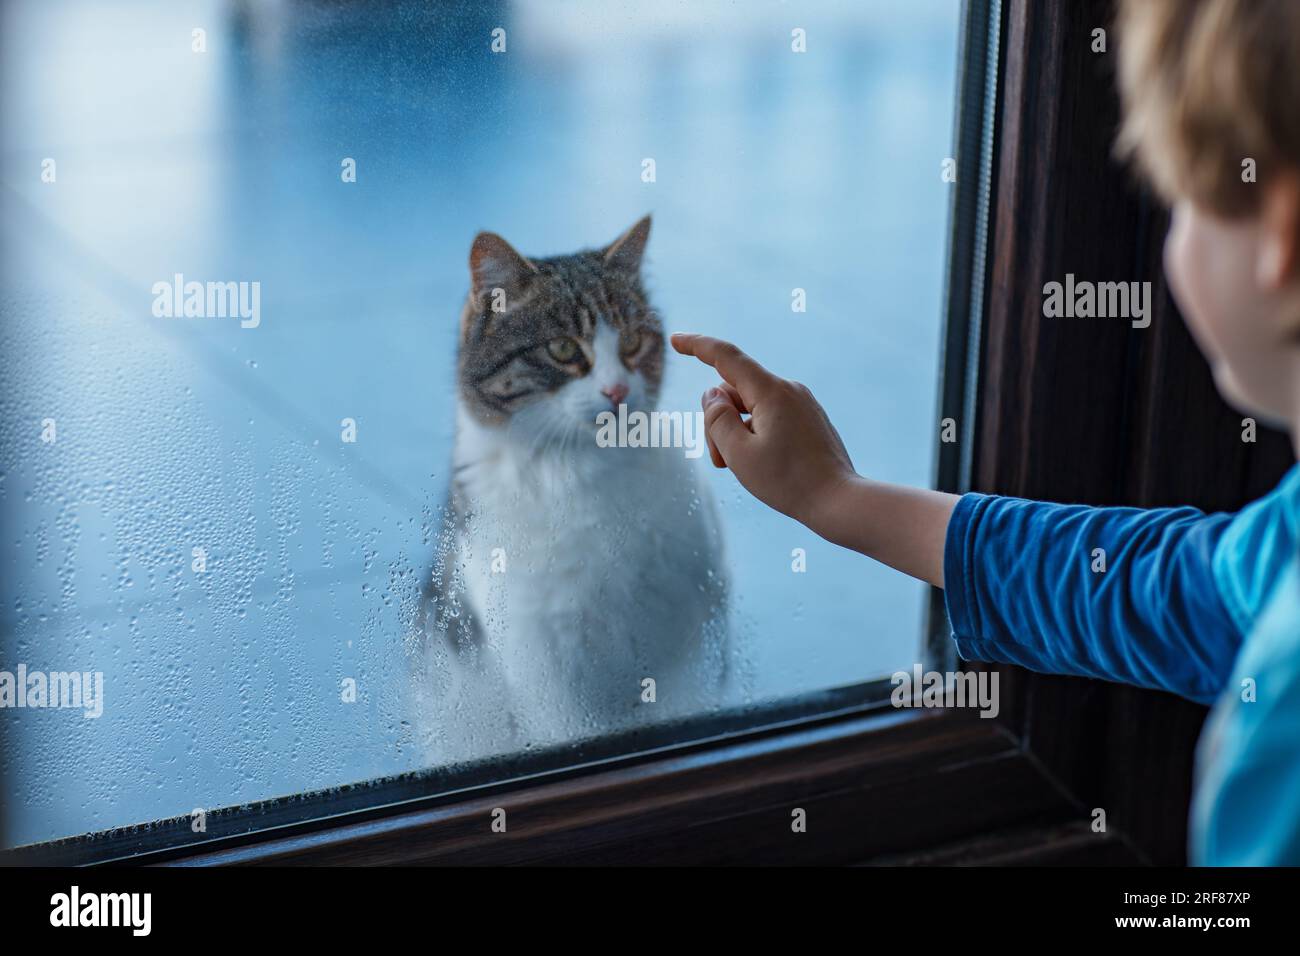 Das Kind sieht die Katze vor dem Fenster an Stockfoto